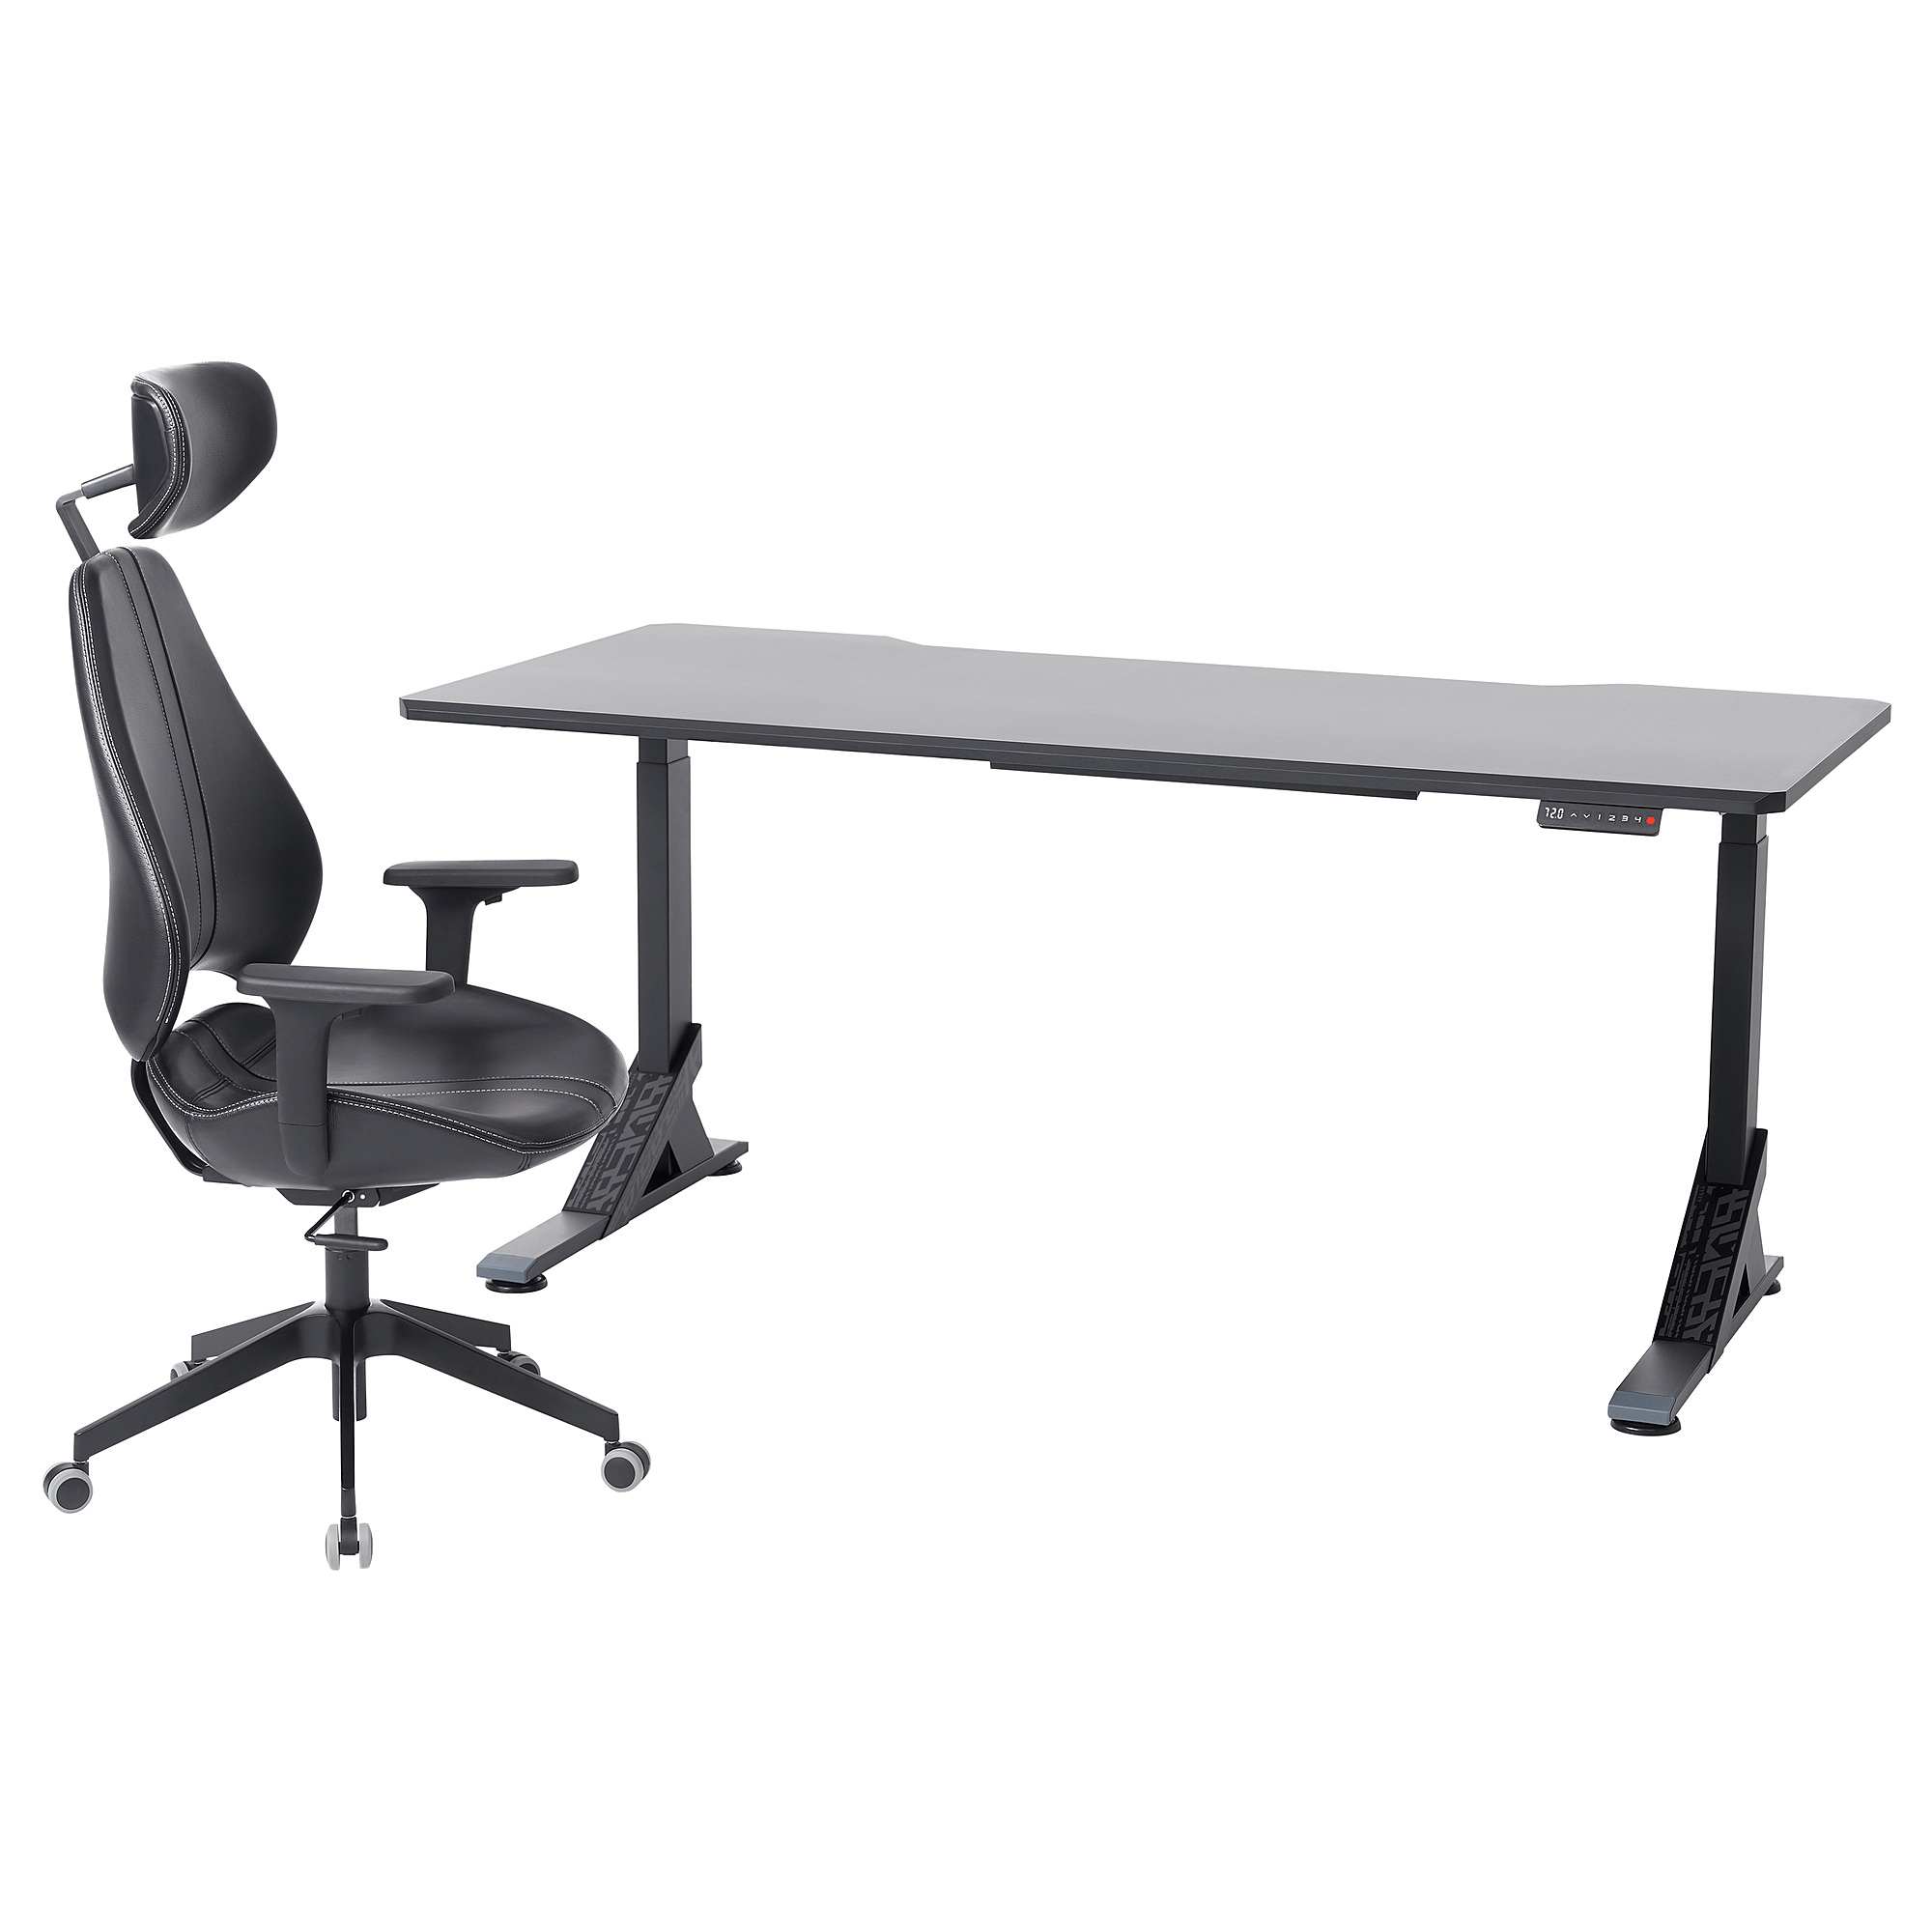 UPPSPEL/GRUPPSPEL gaming desk and chair